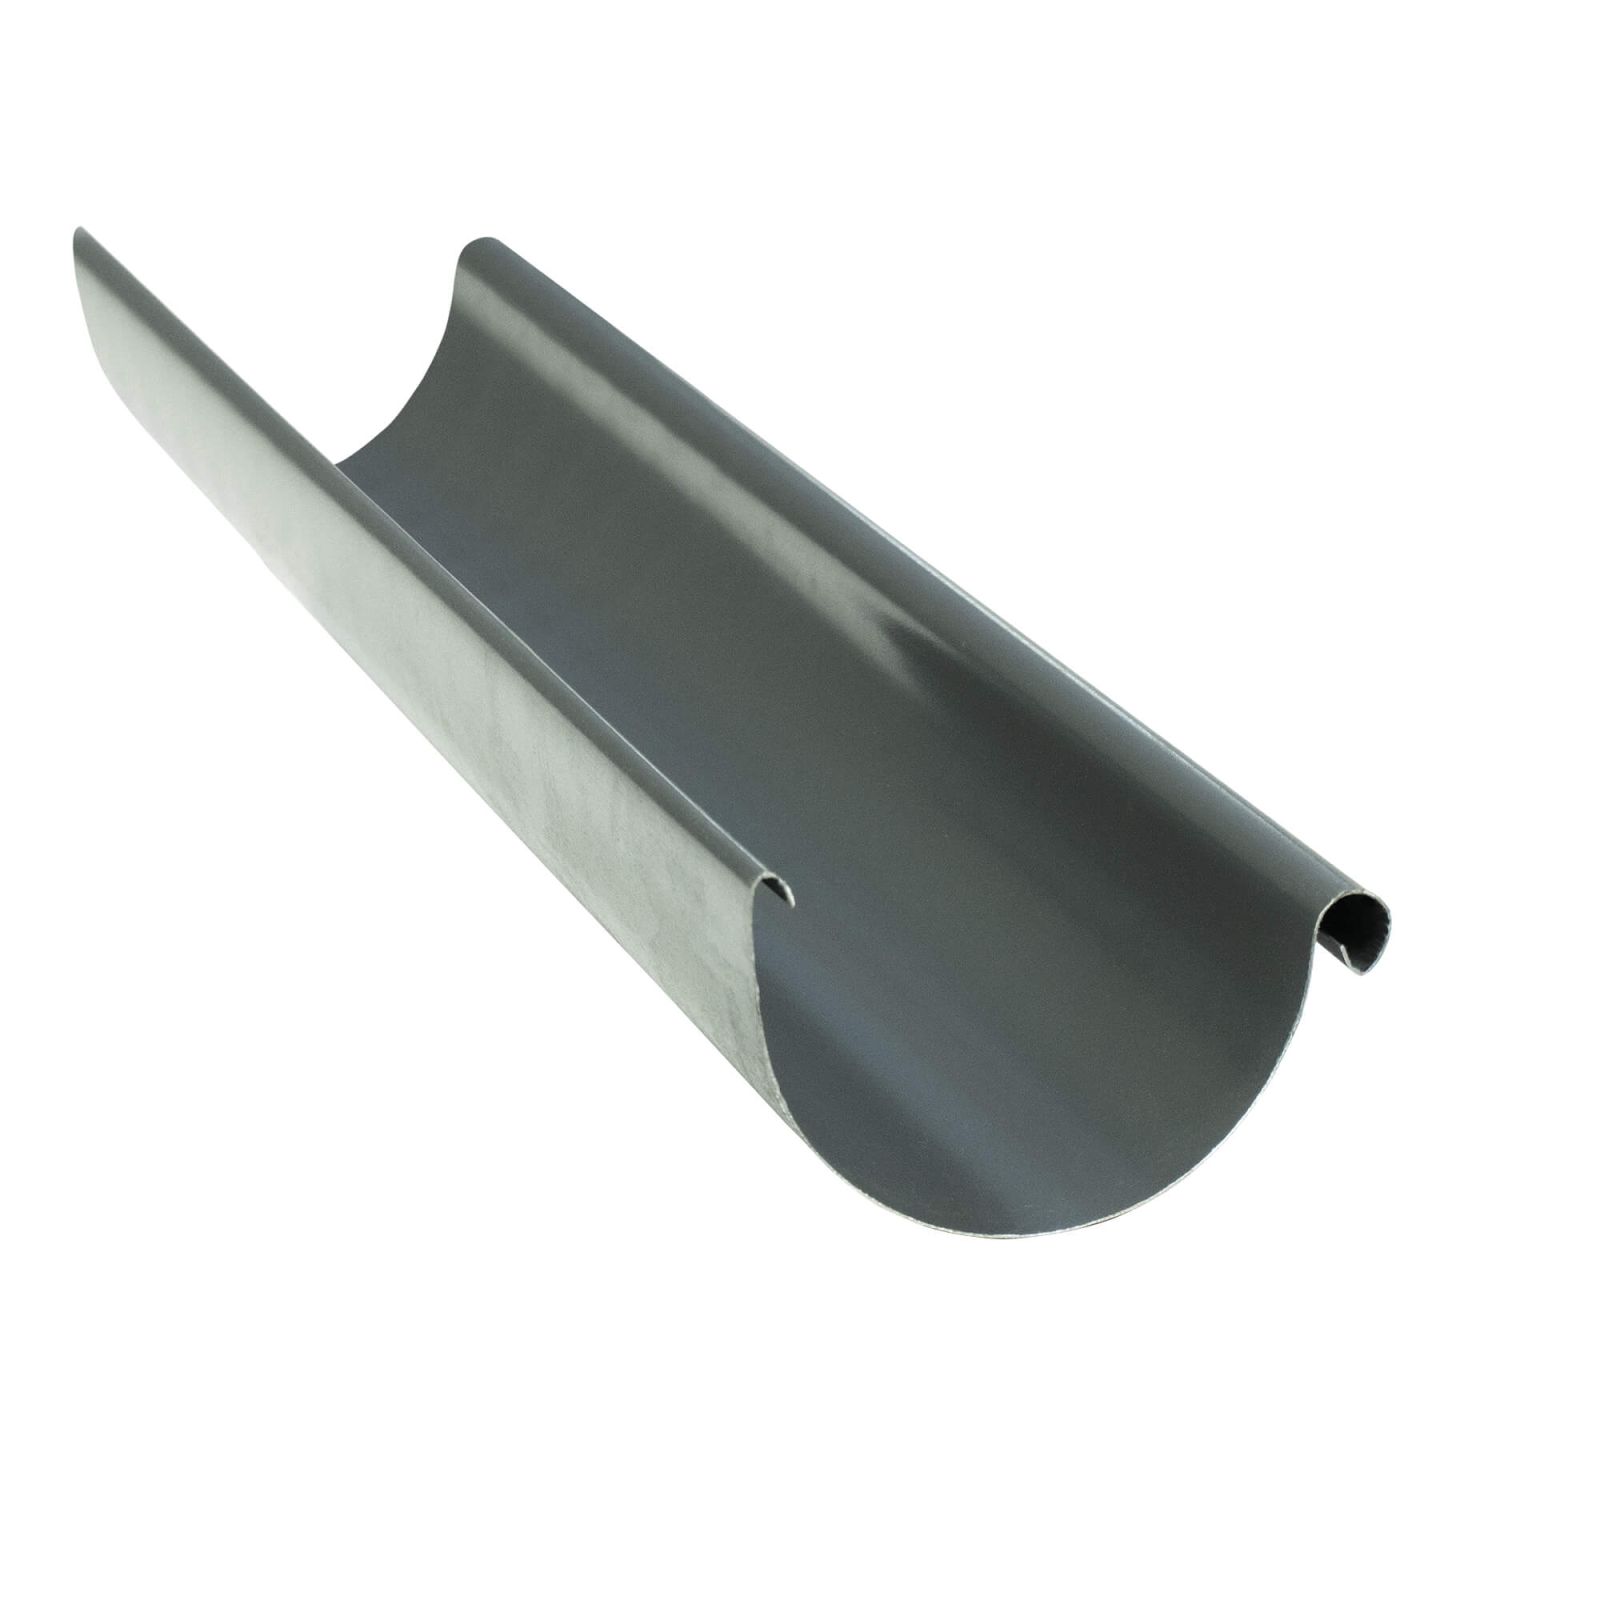 Zoom Modal | Stahl Dachrinnen Sparpaket 6 m | Ø 125/100 mm | Farbe Graphit | 0